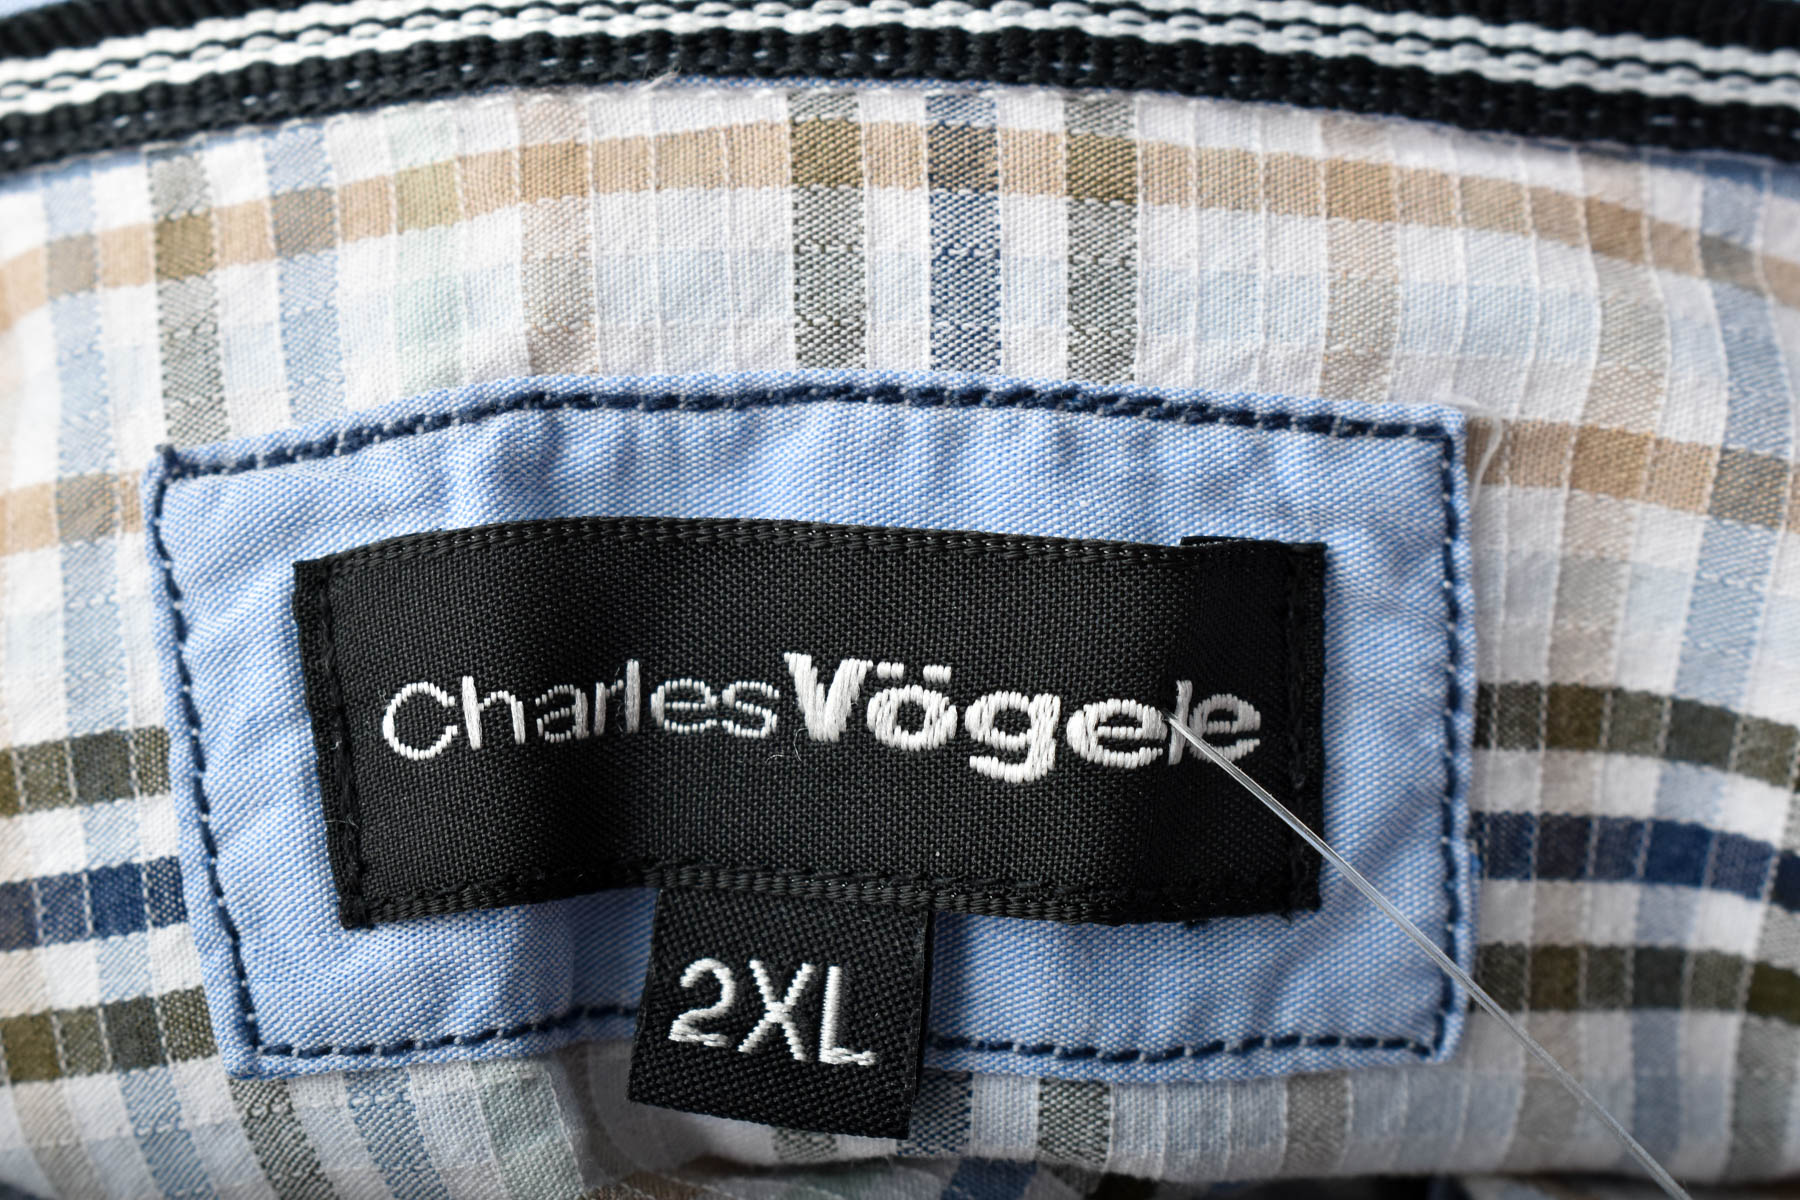 Мъжка риза - Charles Vogele - 2